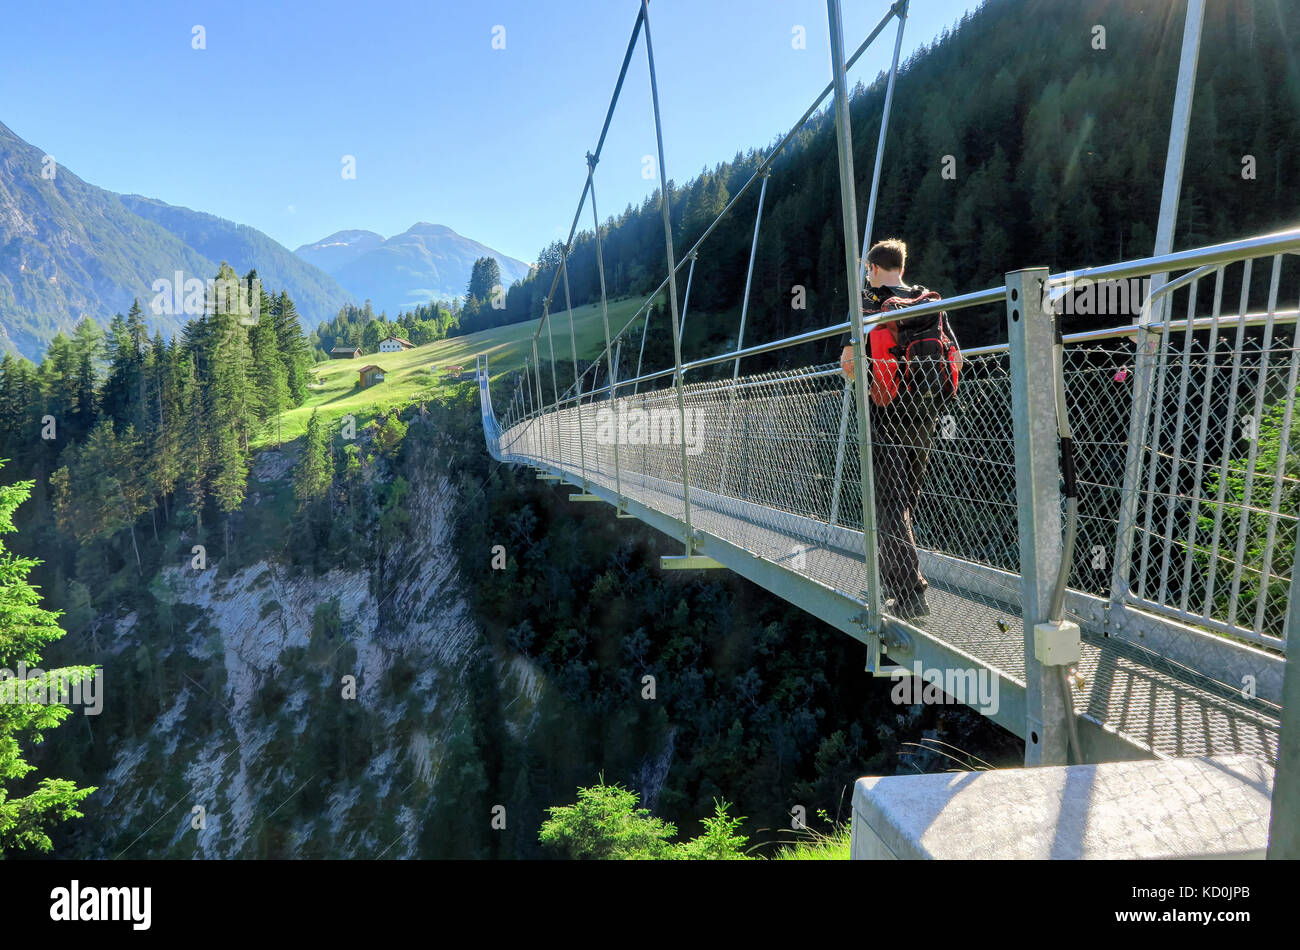 HOLZGAU, AUSTRIA 18 giugno 2017: Un uomo con uno zaino cammina su un ponte sospeso a Holzgau, Austria. Il villaggio di Holzgau è famoso per l’Austria Foto Stock